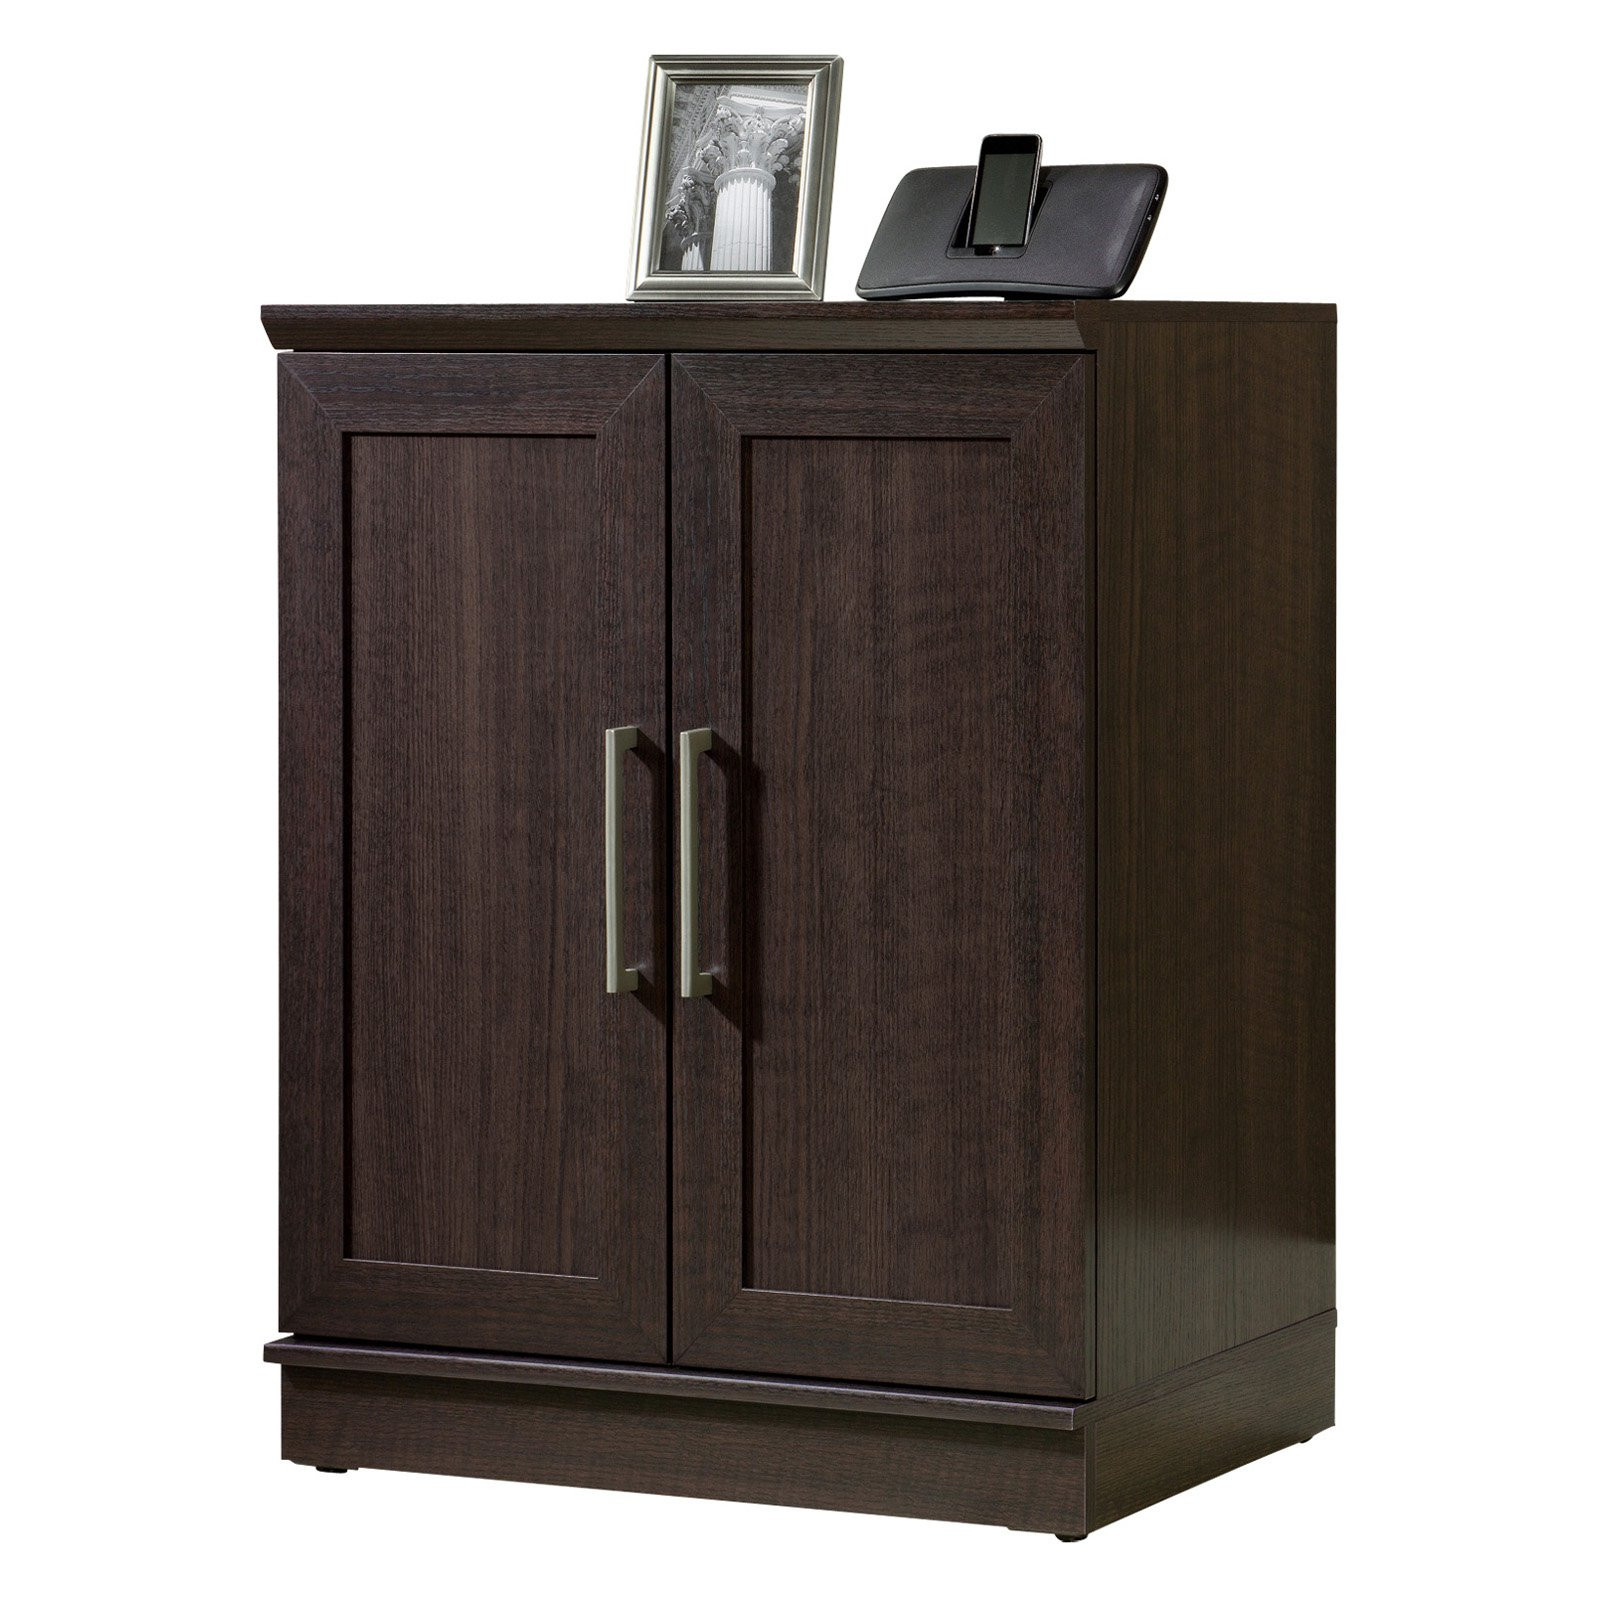 Best ideas about Sauder Homeplus Storage Cabinet
. Save or Pin Sauder Homeplus Base Cabinet Dakota Oak Now.